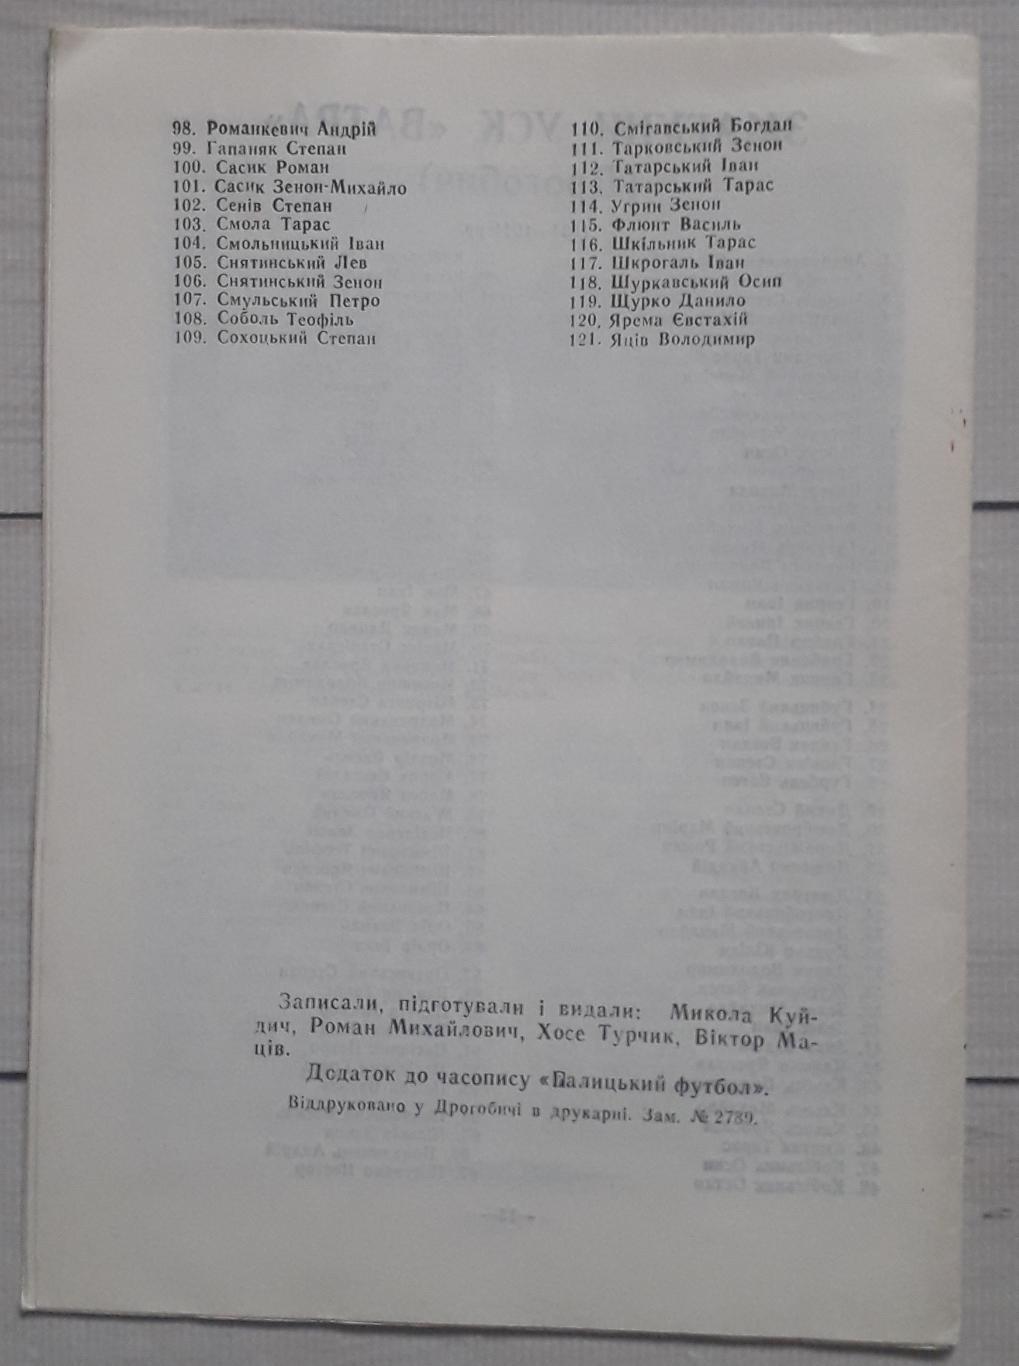 У истоков Дрогобычского футбола 1920-1941. часть первая 2